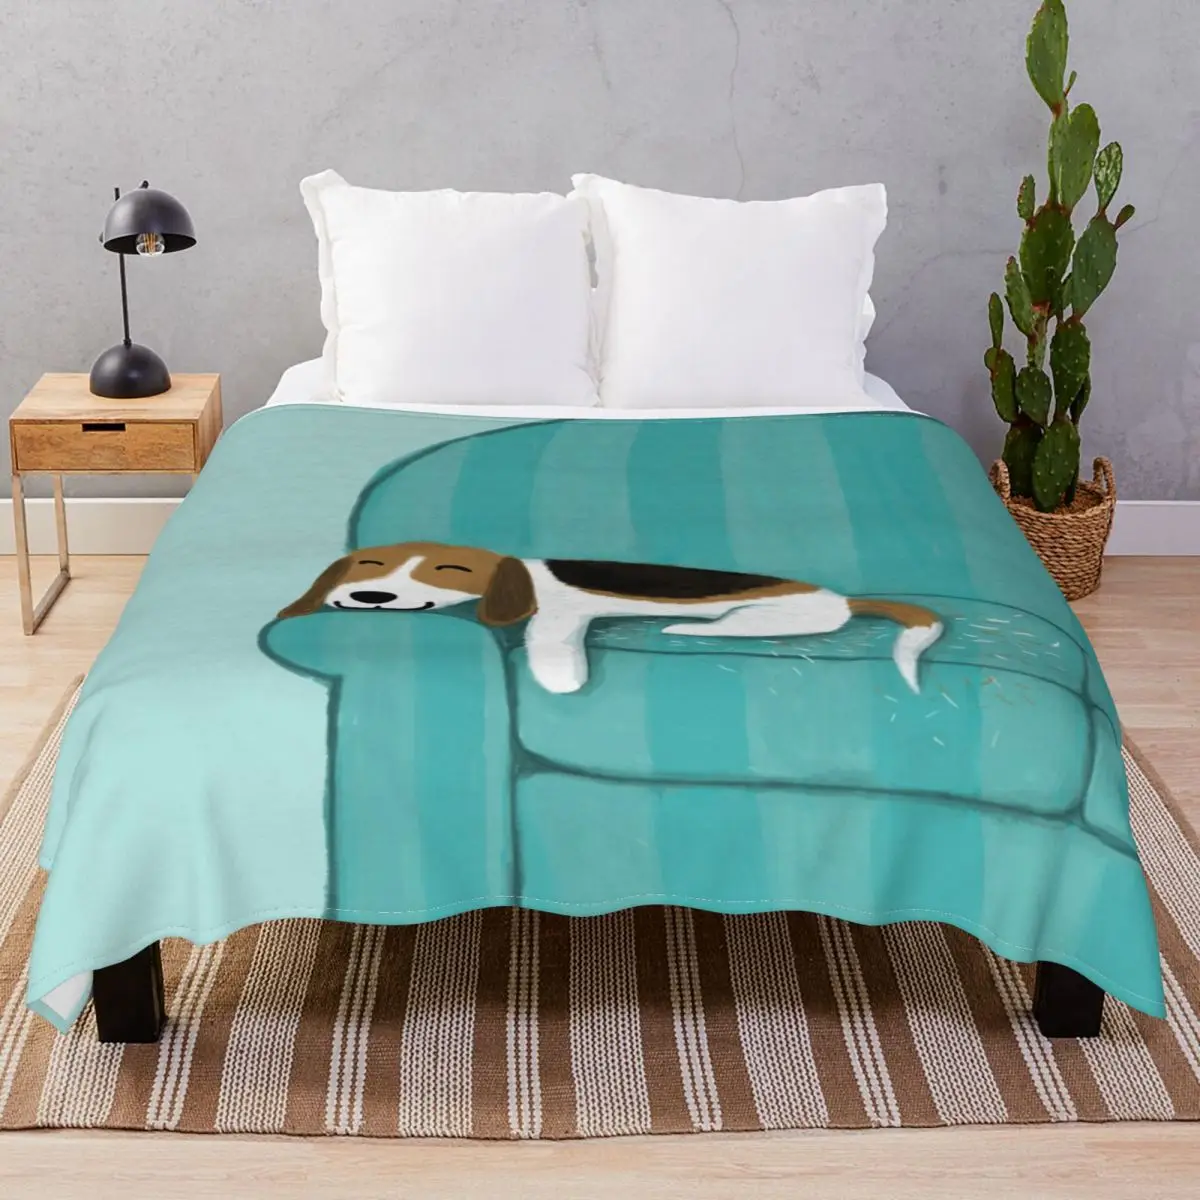 

Фланелевое Одеяло Унисекс, мягкое покрывало в виде собаки, для постельного белья, дивана, путешествий, офиса